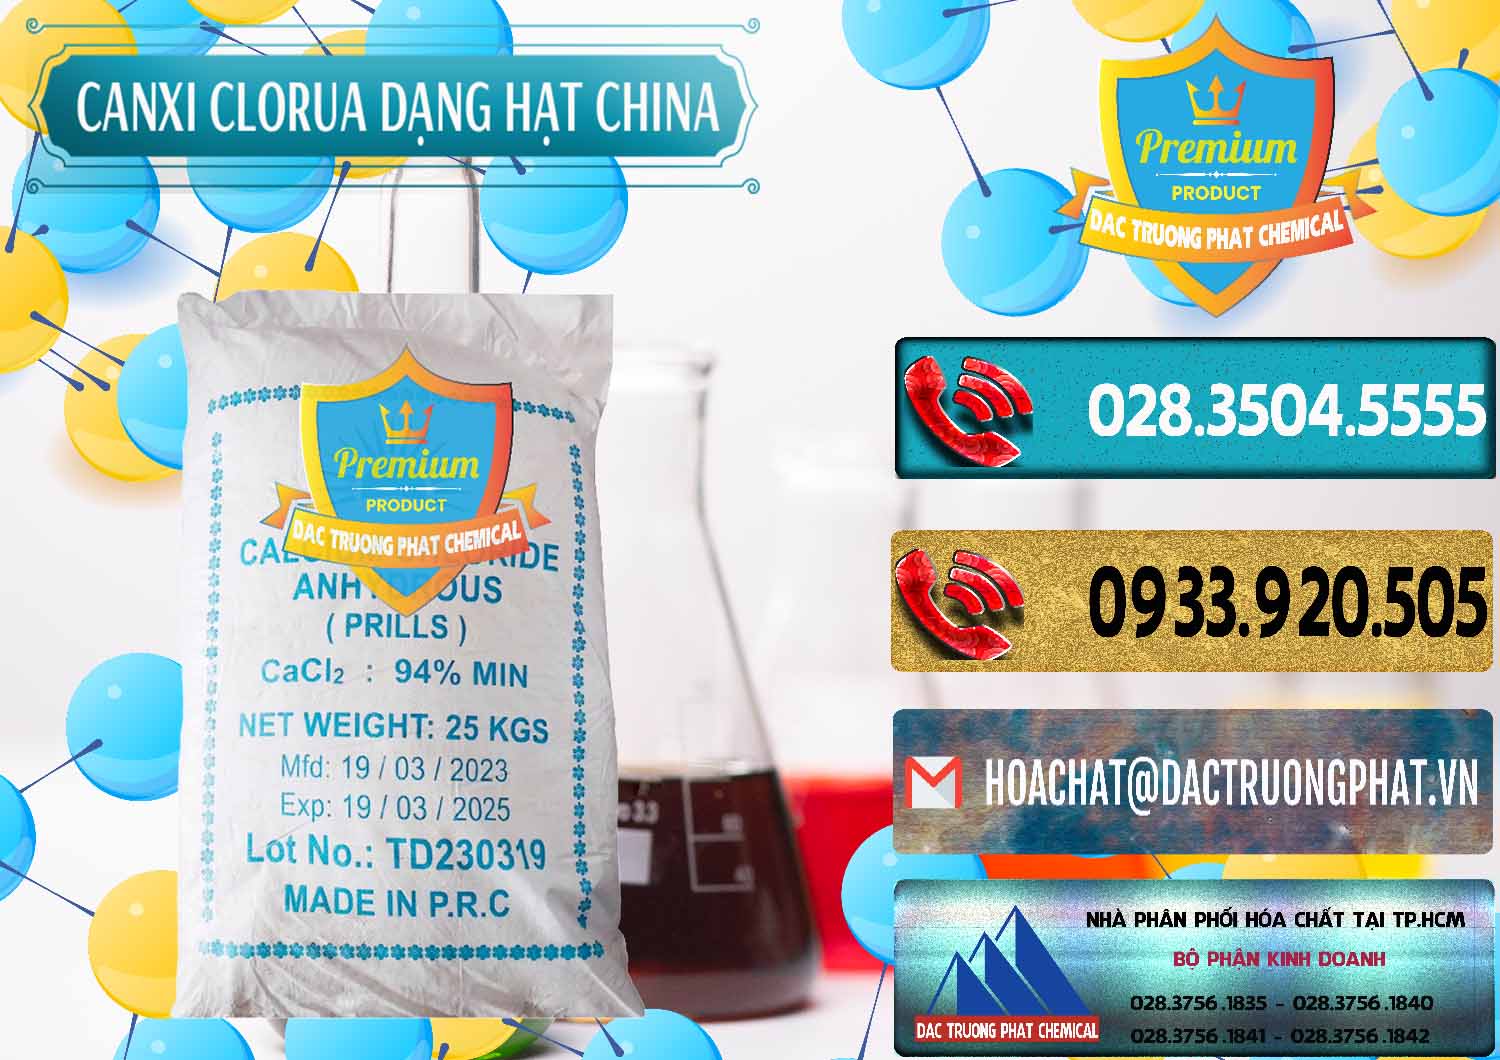 Nơi bán ( phân phối ) CaCl2 – Canxi Clorua 94% Dạng Hạt Trung Quốc China - 0373 - Công ty nhập khẩu & cung cấp hóa chất tại TP.HCM - hoachatdetnhuom.com